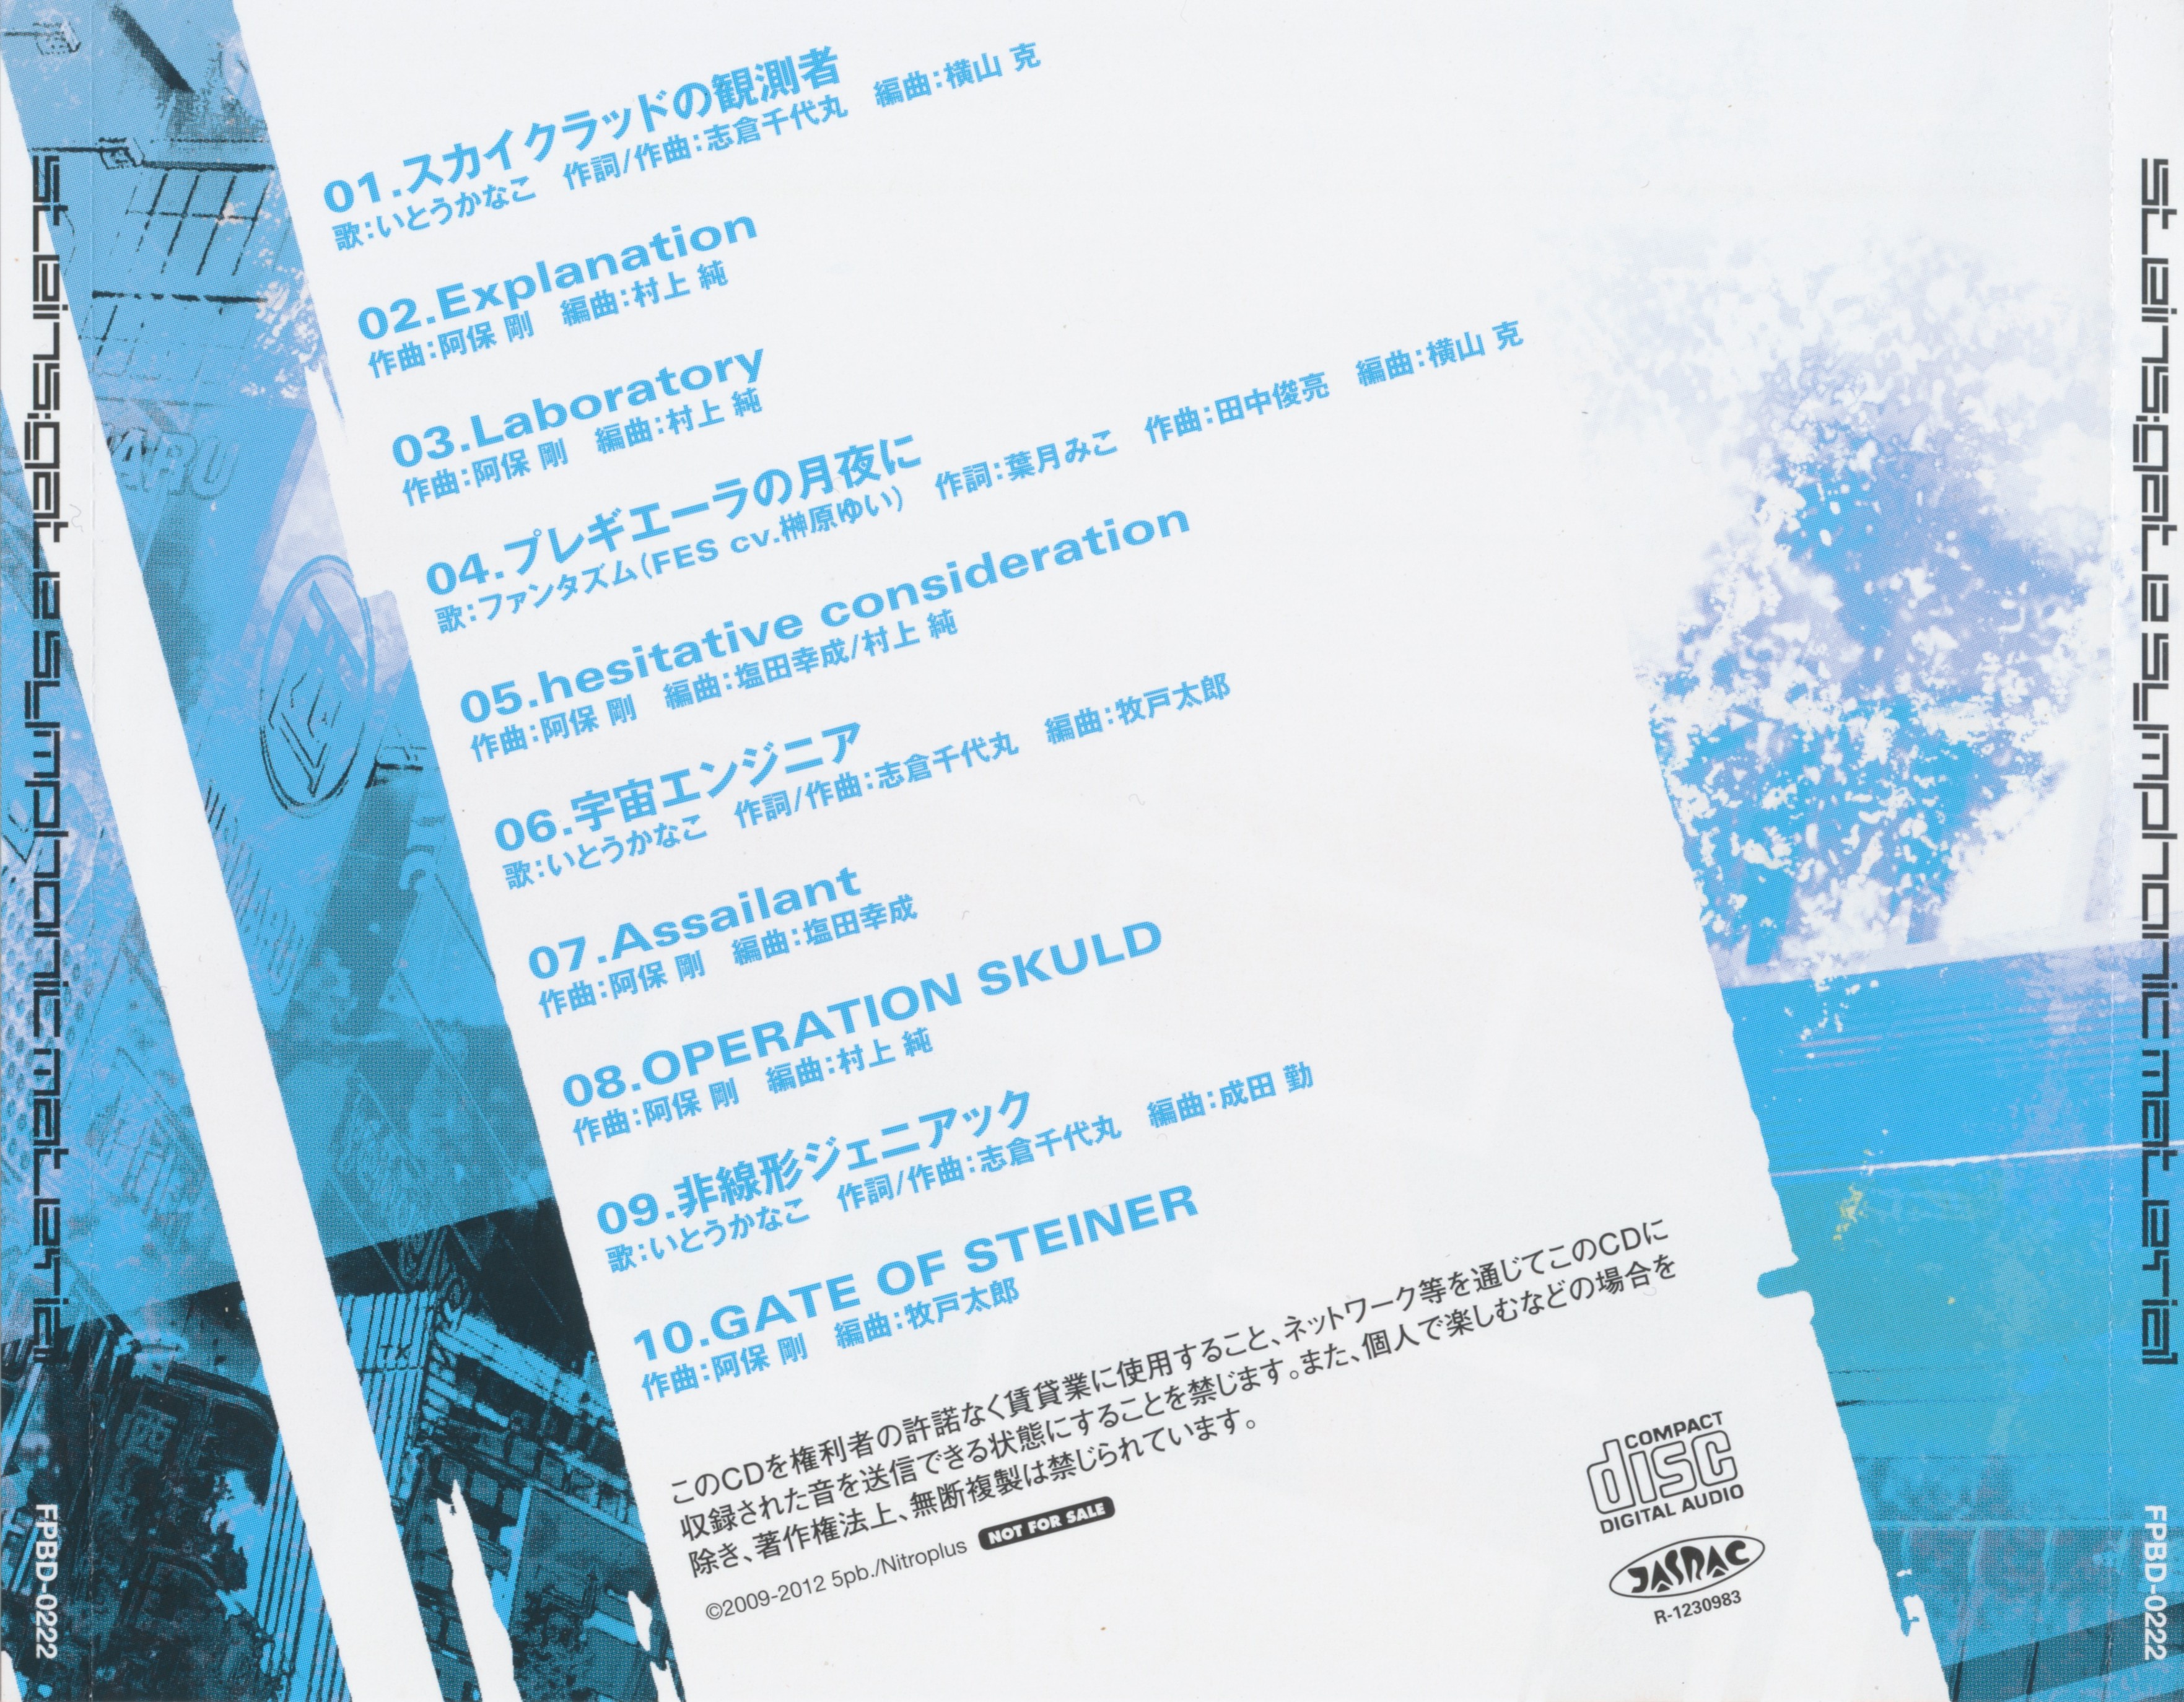 专辑封底-STEINS;GATE SYMPHONIC MATERIAL.jpg